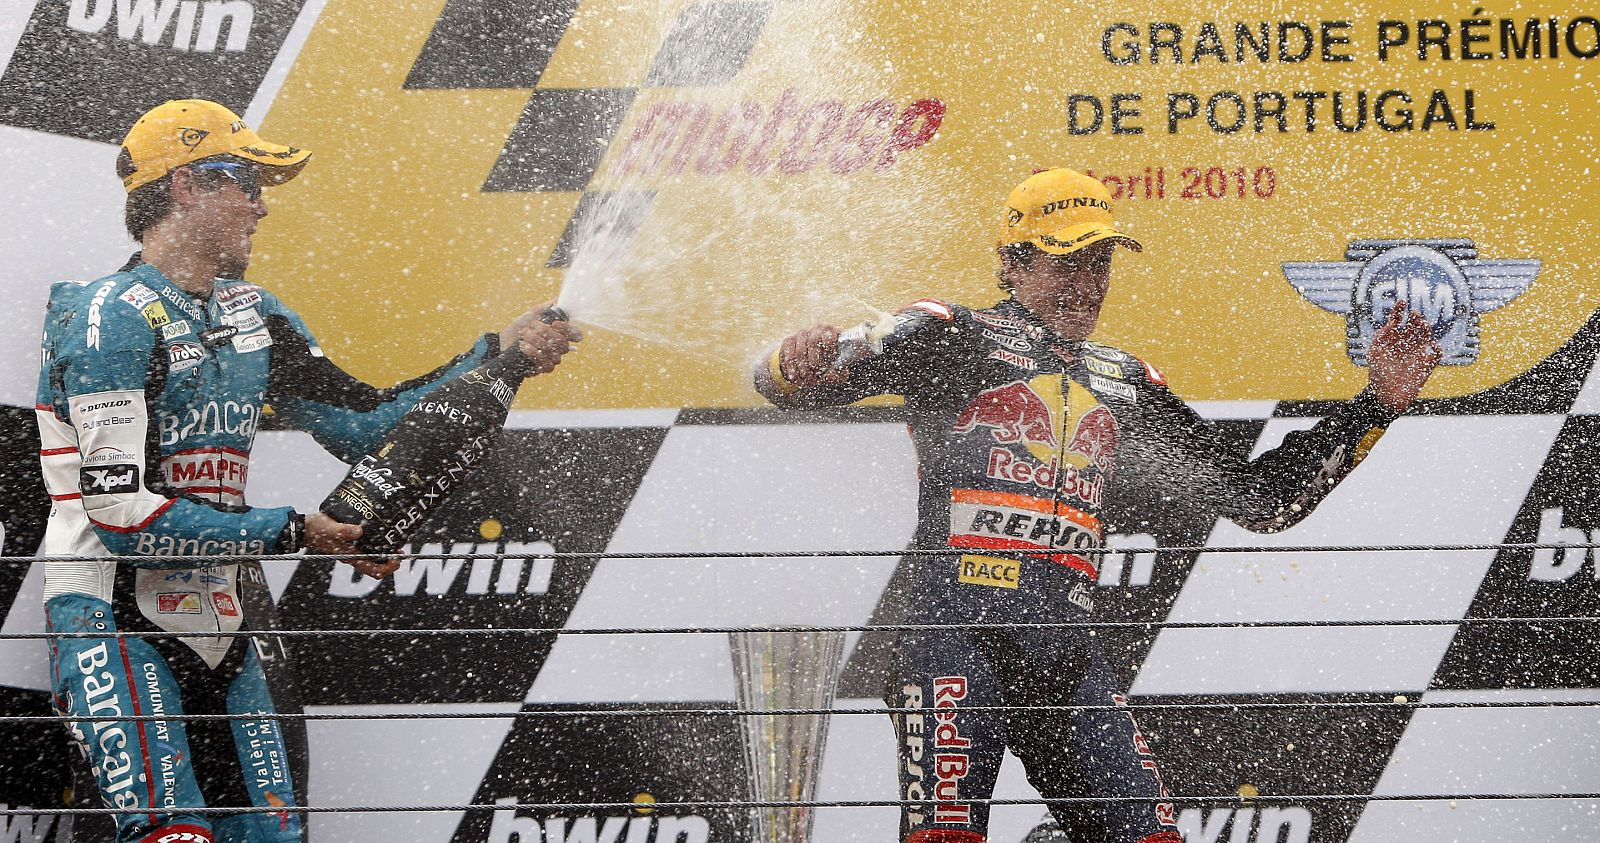 Nico Terol y Marc Márquez logran en el Gran Premio de Portugal aumentar a 26 el número de victorias consecutivas en 125cc.